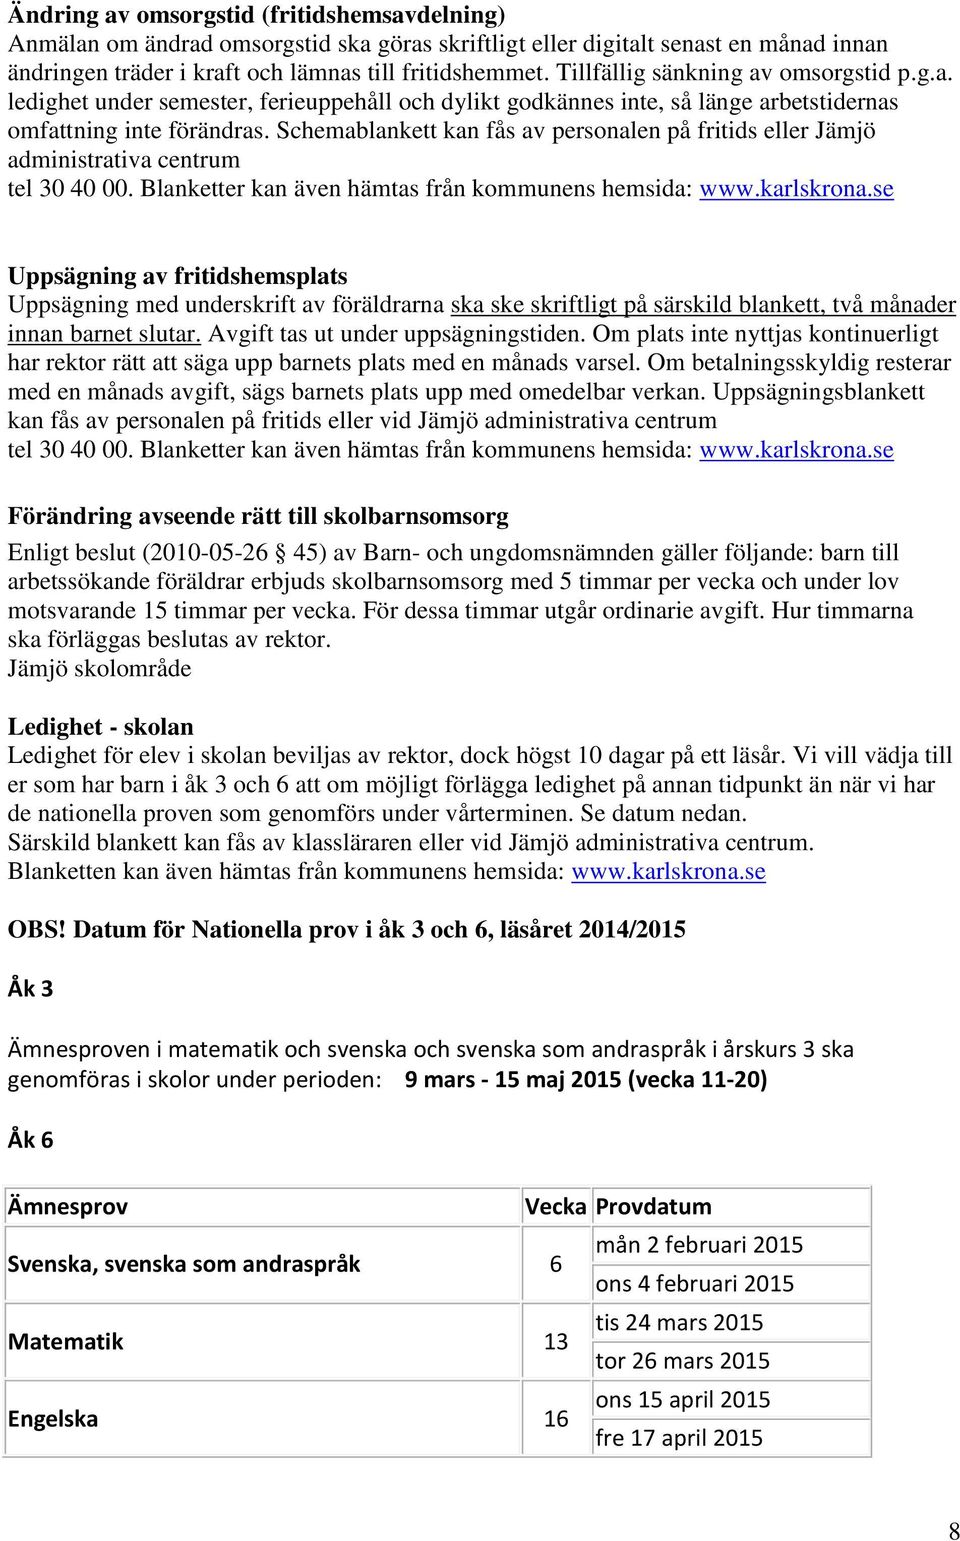 Schemablankett kan fås av personalen på fritids eller Jämjö administrativa centrum tel 30 40 00. Blanketter kan även hämtas från kommunens hemsida: www.karlskrona.